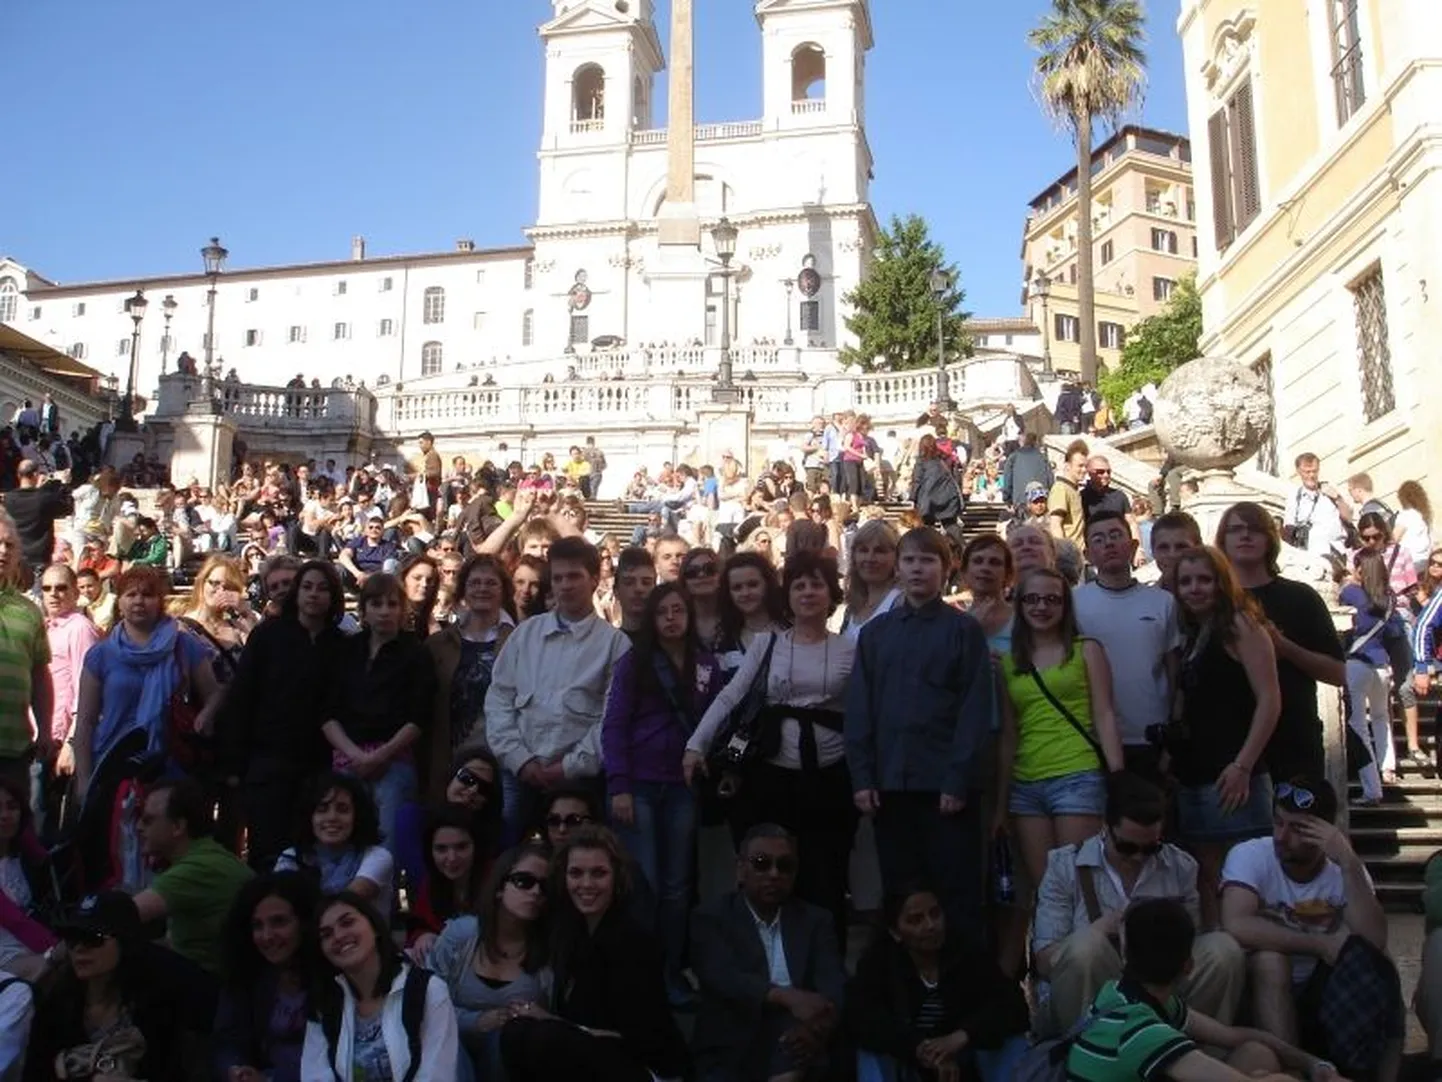 Sindi gümnaasiumi delegatsioon käis möödunud aastal Comeniuse projekti raames Itaalias, nüüd võõrustavad Sindi kooli õpilased itaallasi.